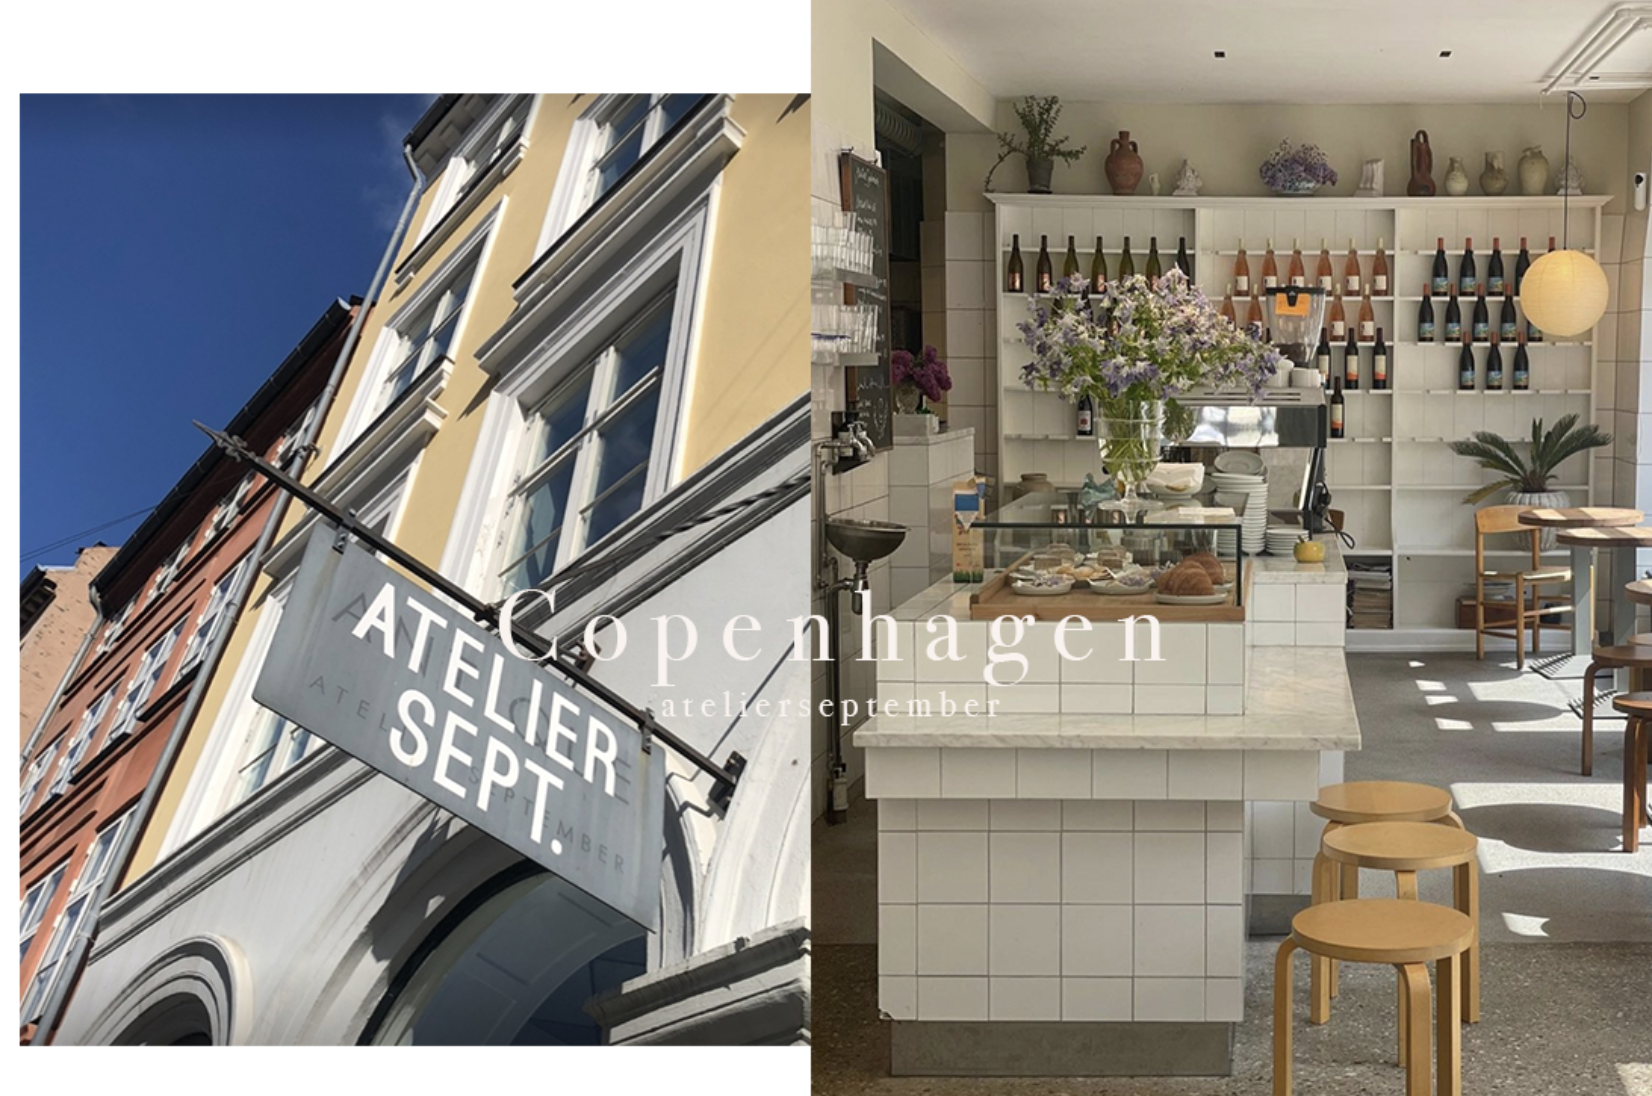 Atelier September 丹麥咖啡店 